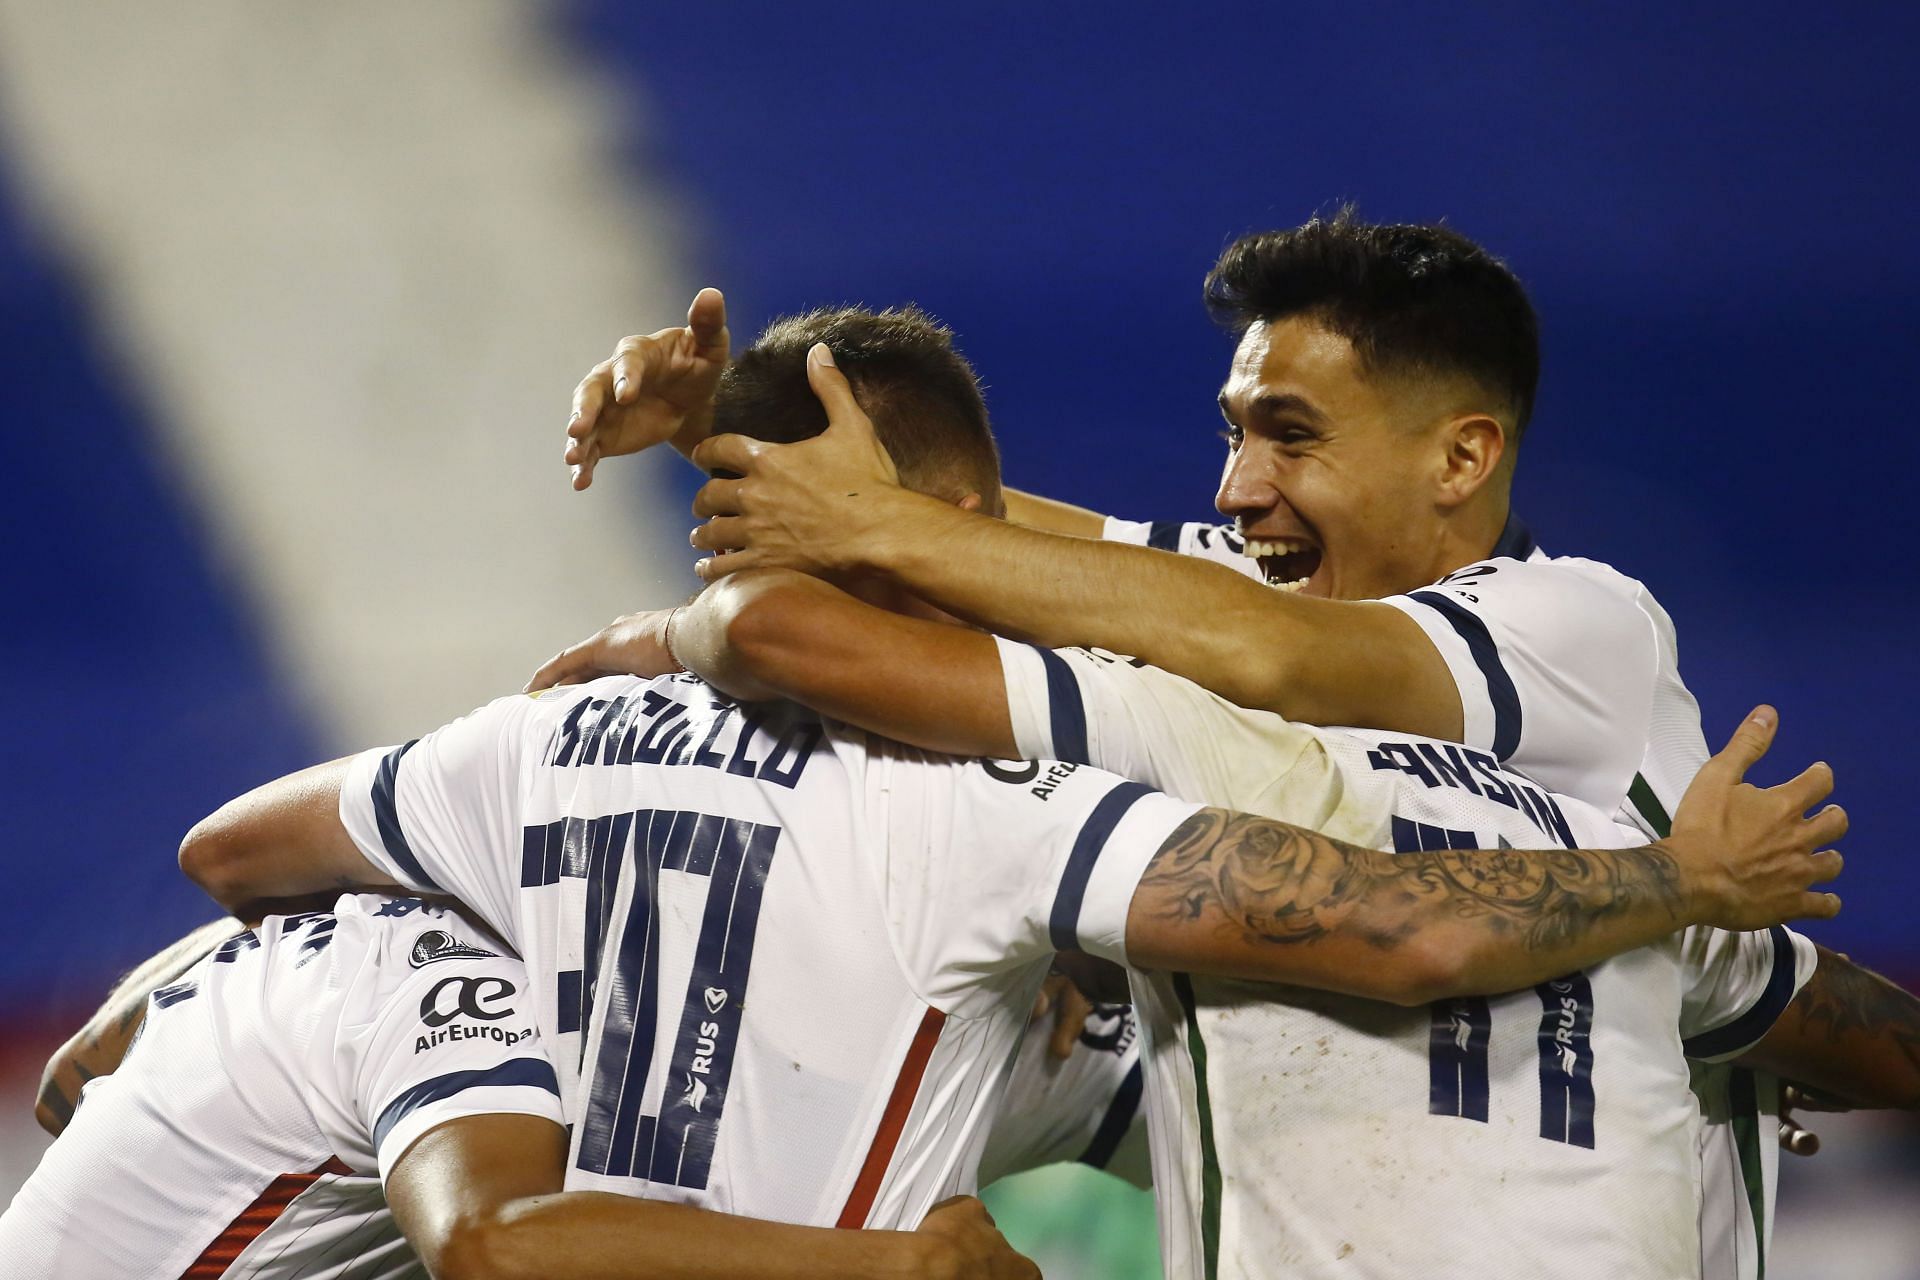 Velez Sarsfield face Nacional in their upcoming Copa Libertadores fixture on Wednesday